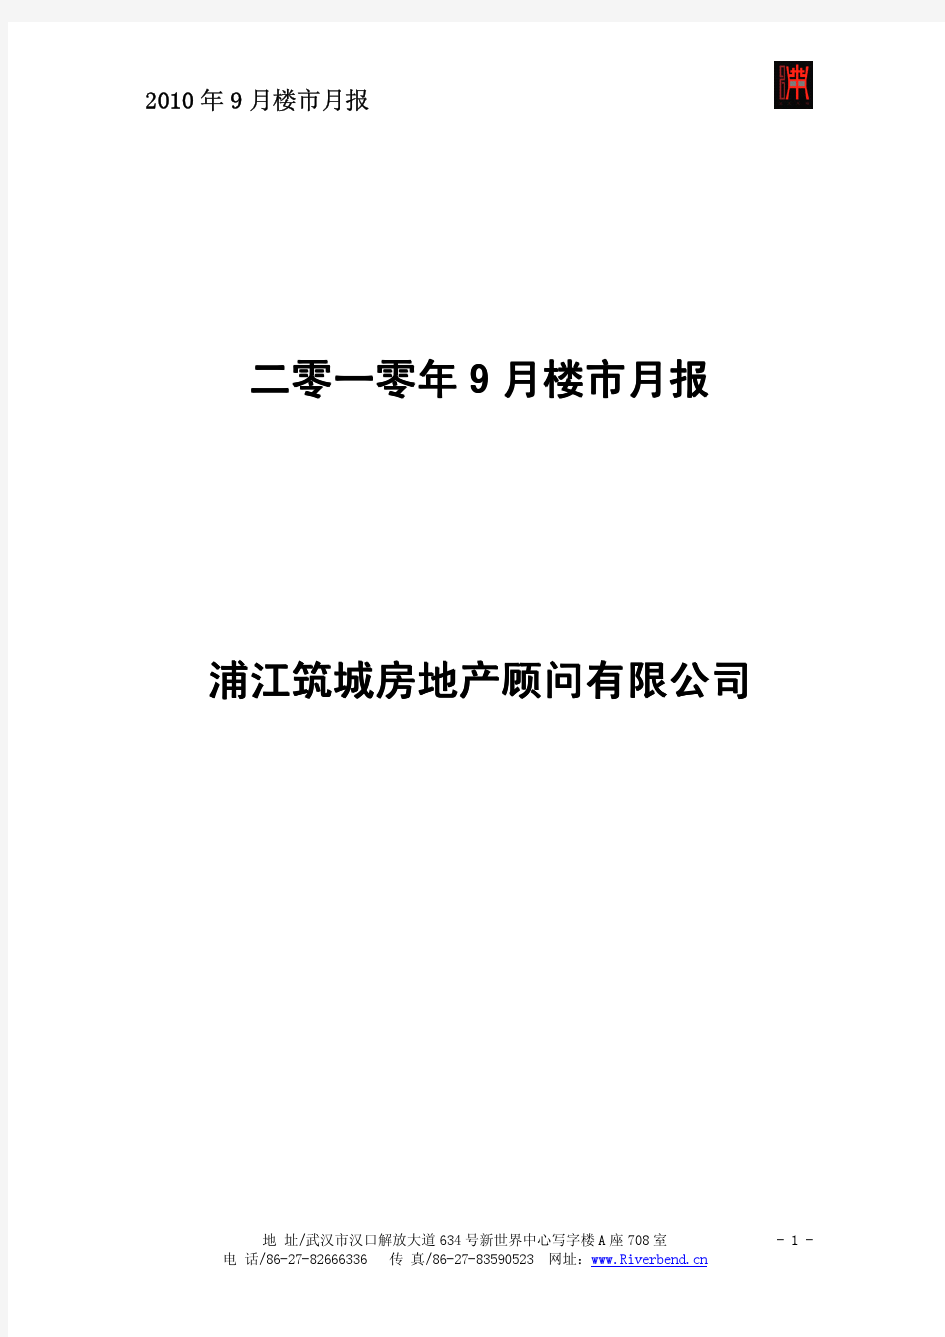 浦江筑城：2010年9月武汉房地产市场研究月报 (48P)